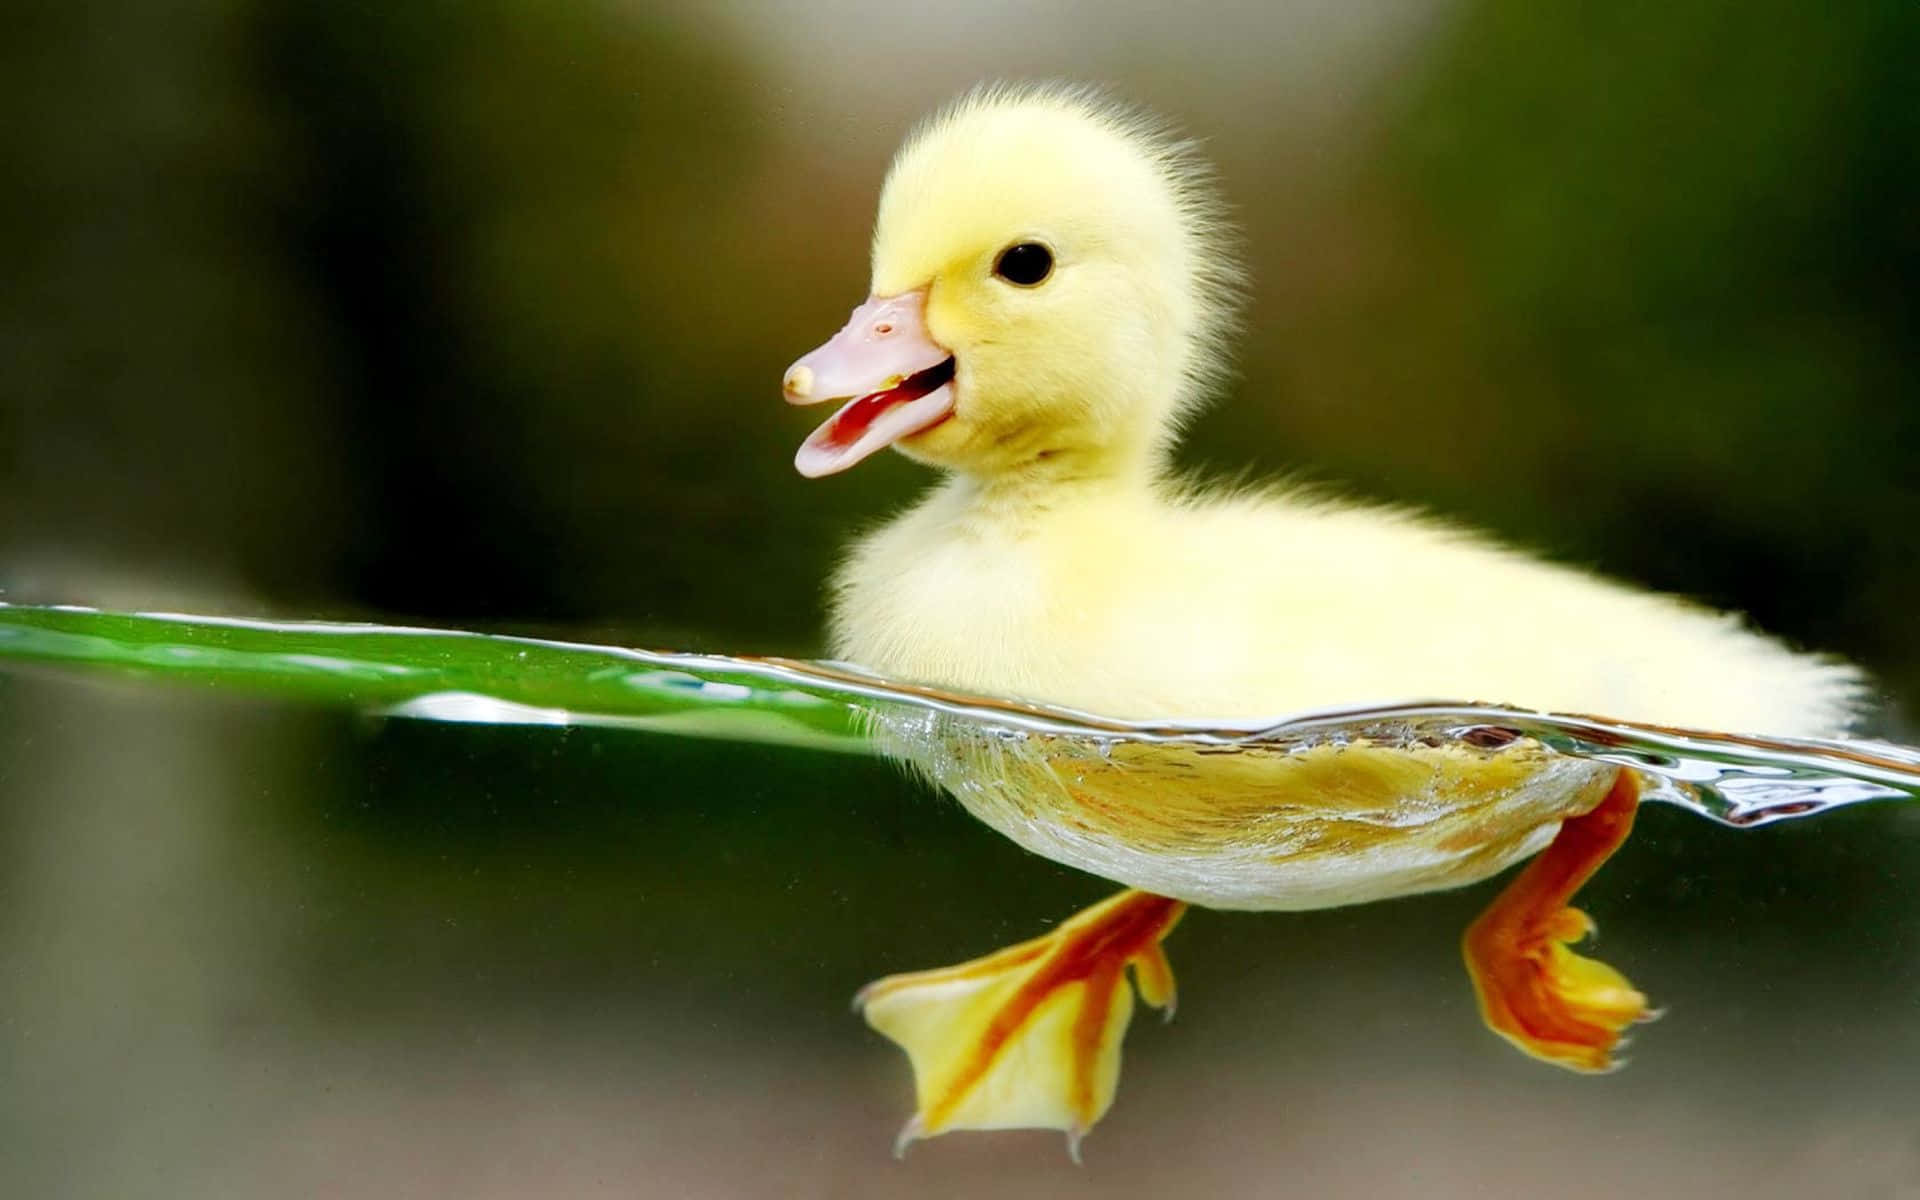 Einekleine Ente Schwimmt Mit Offenem Mund Im Wasser.